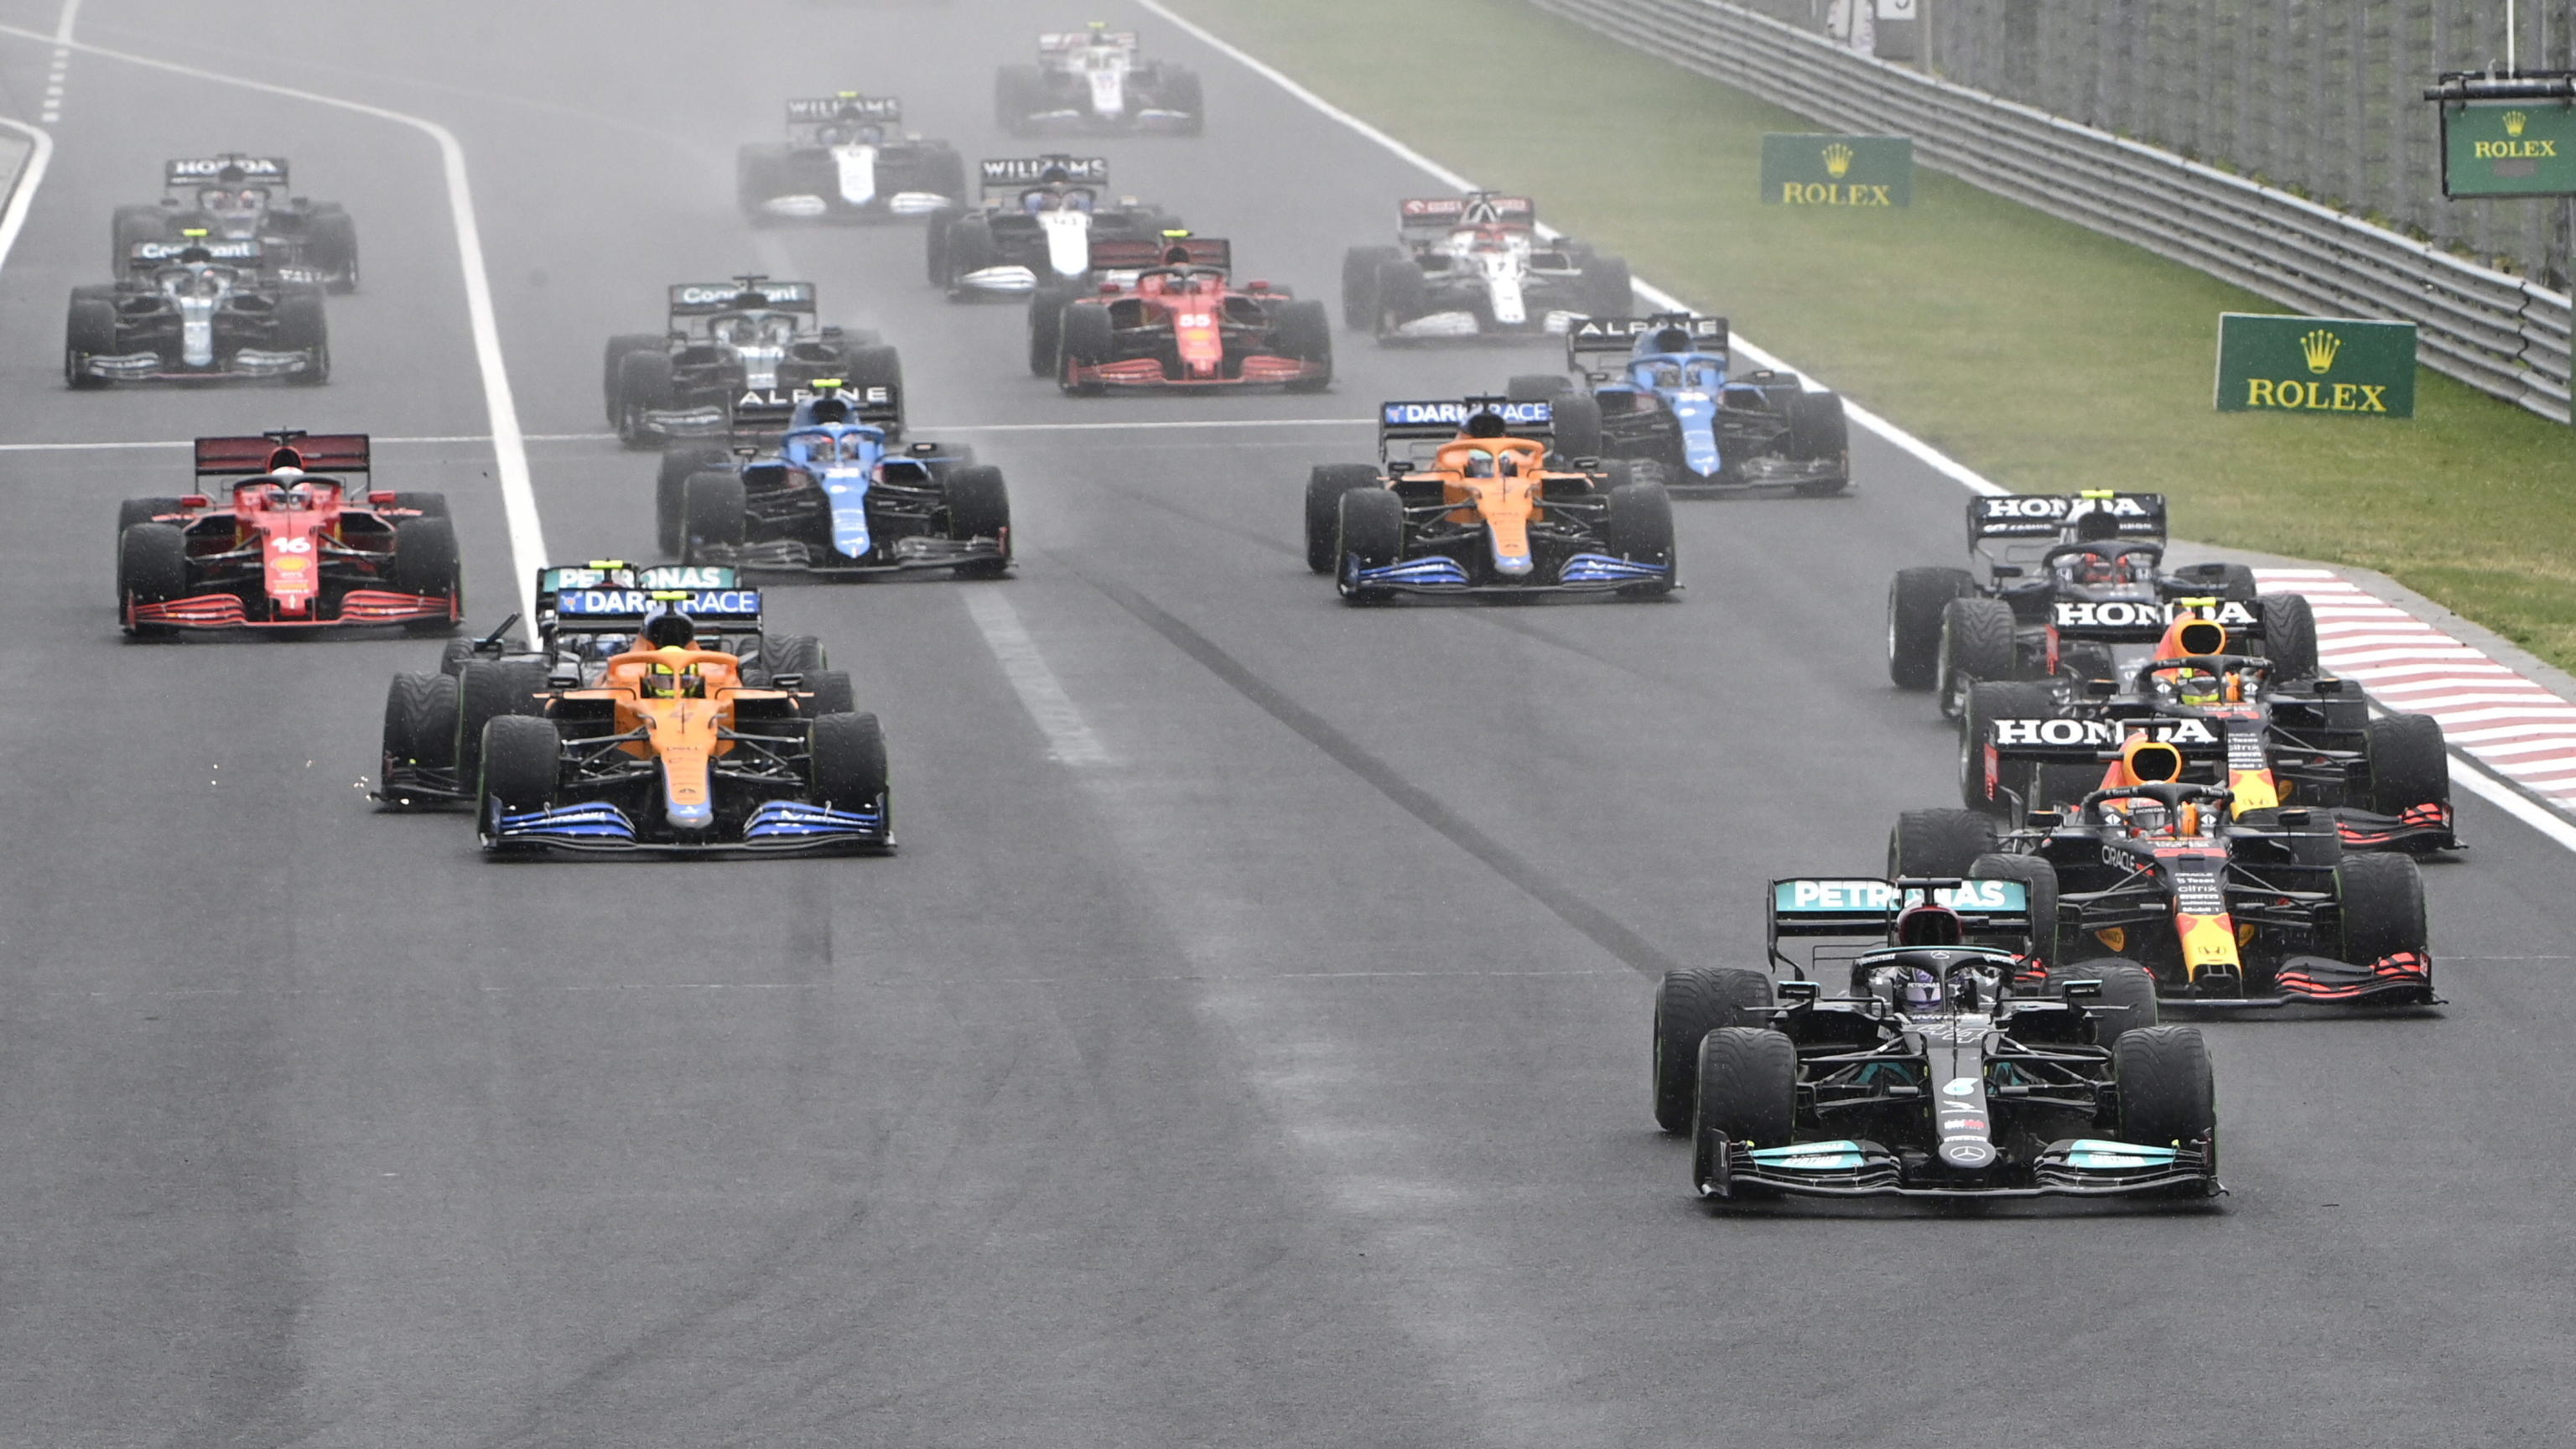 F1, Gp Ungheria: che carambola al via! Leclerc colpito, è fuori